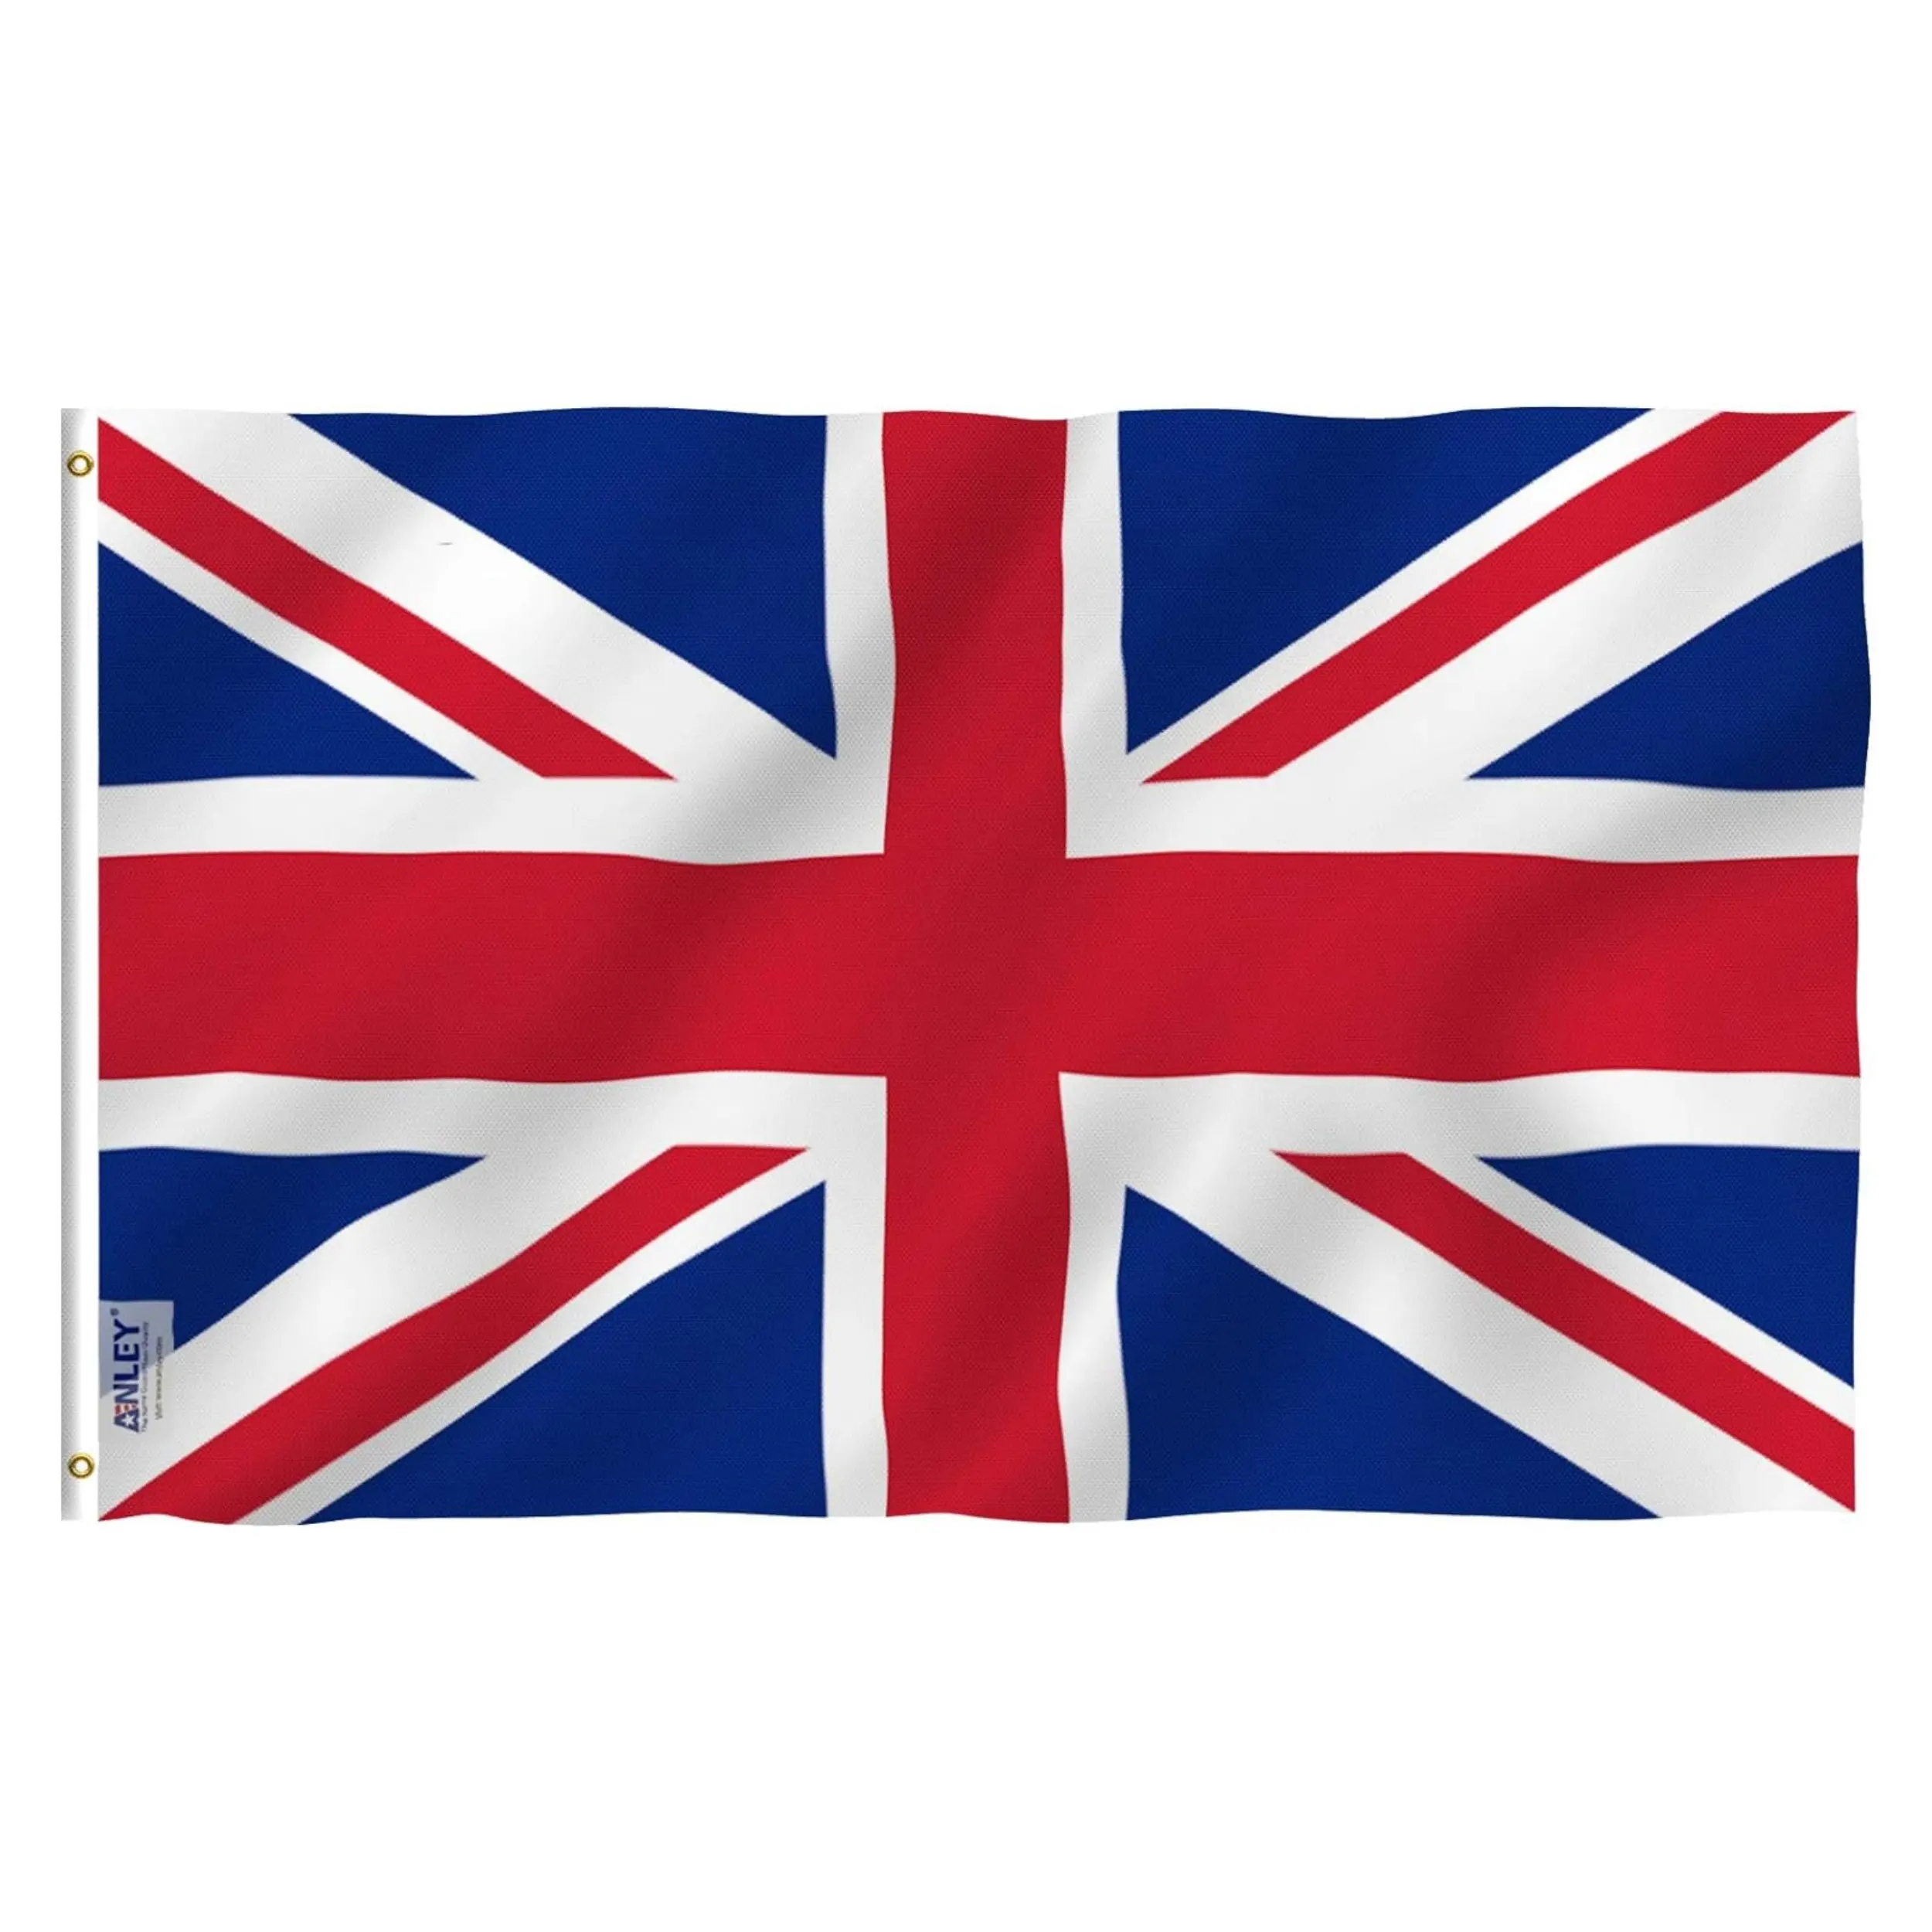 Vente en gros 3x5 FT Polyester UK Grande-Bretagne Drapeau National Tous Pays Angleterre Royaume-Uni Drapeau britannique 3x5FT Union Jack Drapeau